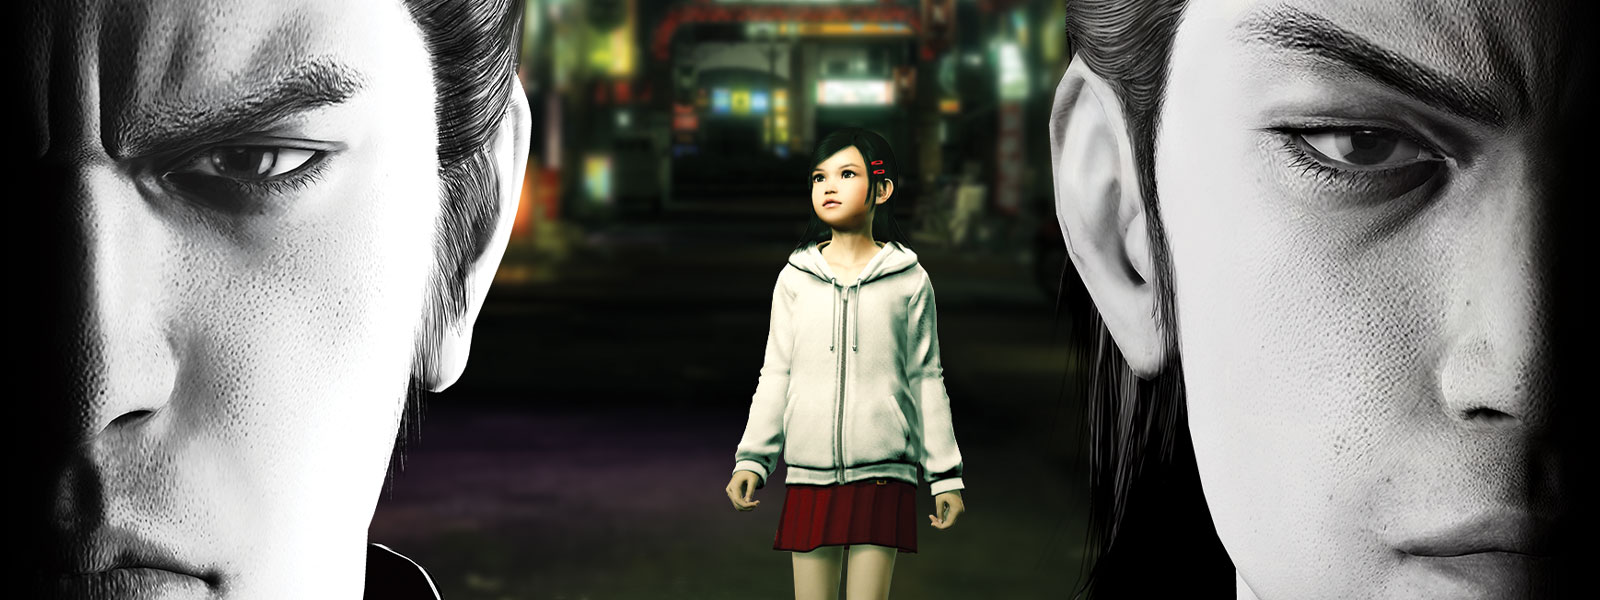 Dos personajes de Yakuza miran sombríamente hacia adelante, con una niña pequeña parada en la ciudad detrás de ellos.